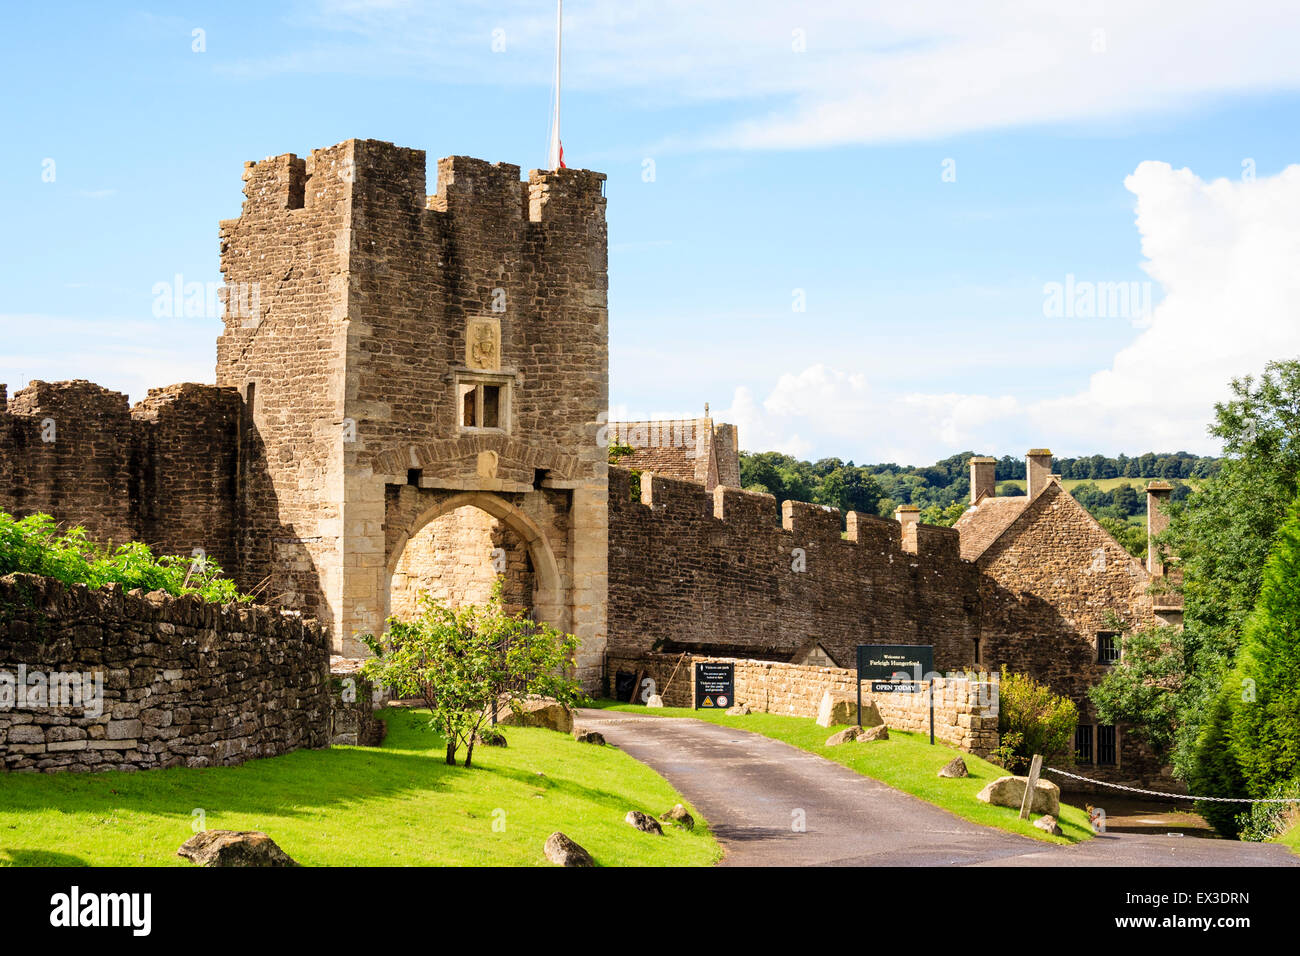 Le rovine della Farleigh Hungerford castello. Il XIV secolo rivellino est, l'ingresso principale al castello con la cortina esterna e la parete di cielo blu. Foto Stock